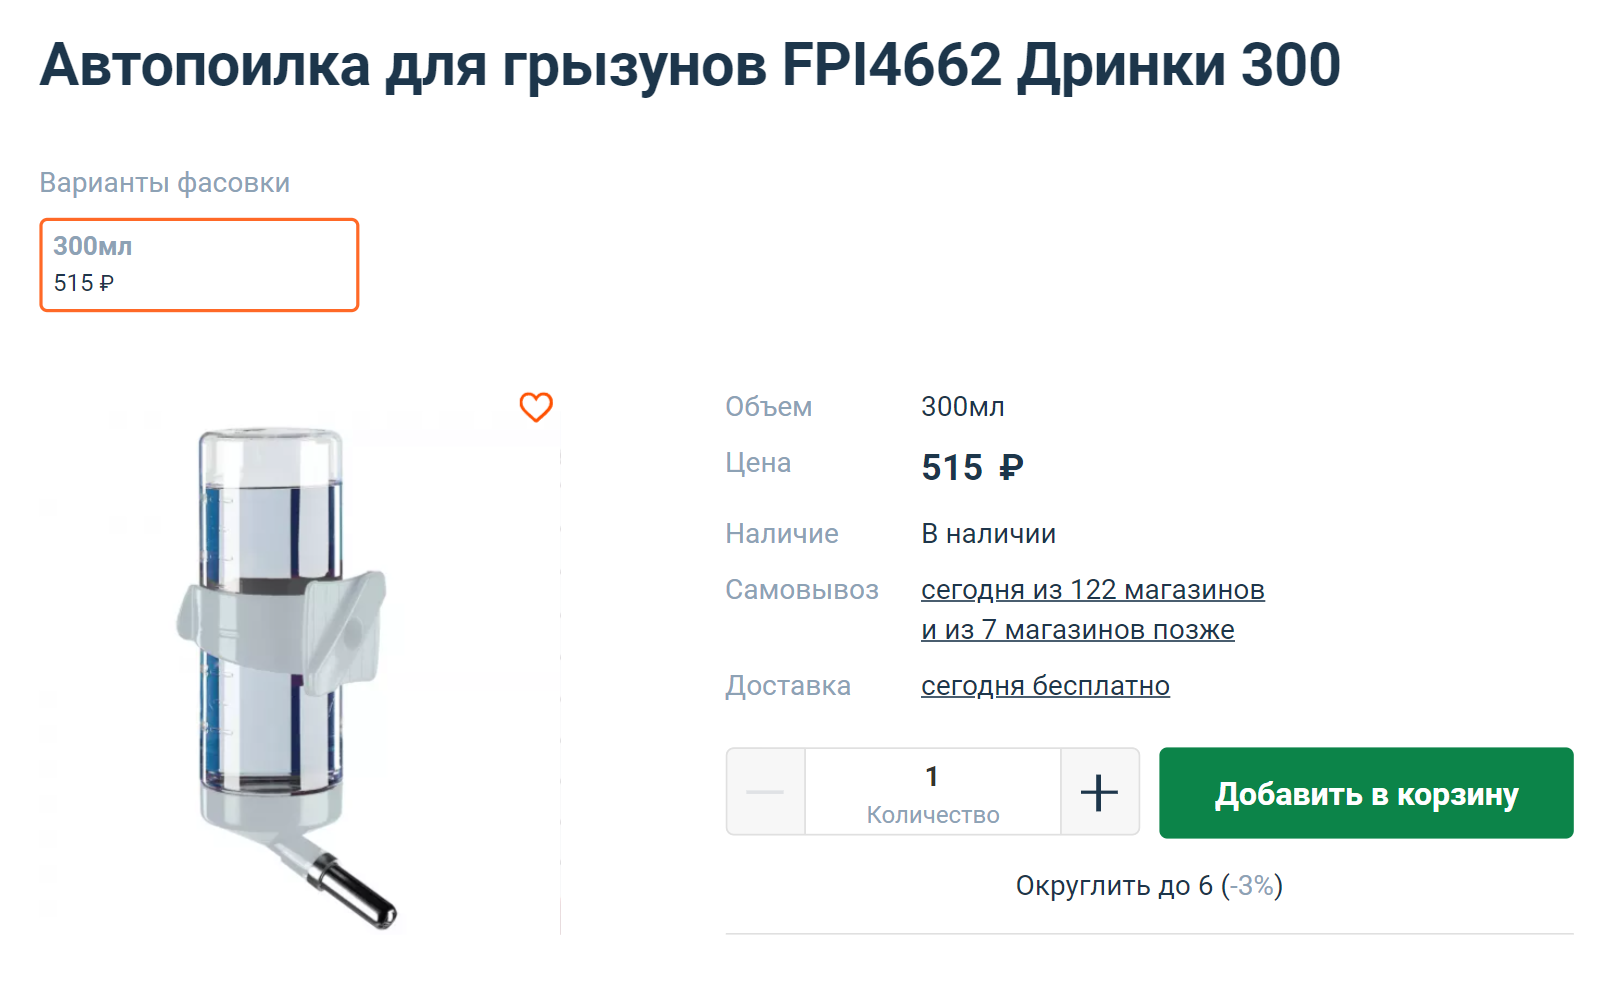 У Фани поилка чуть дороже, но удобнее. Источник: 4lapy.ru